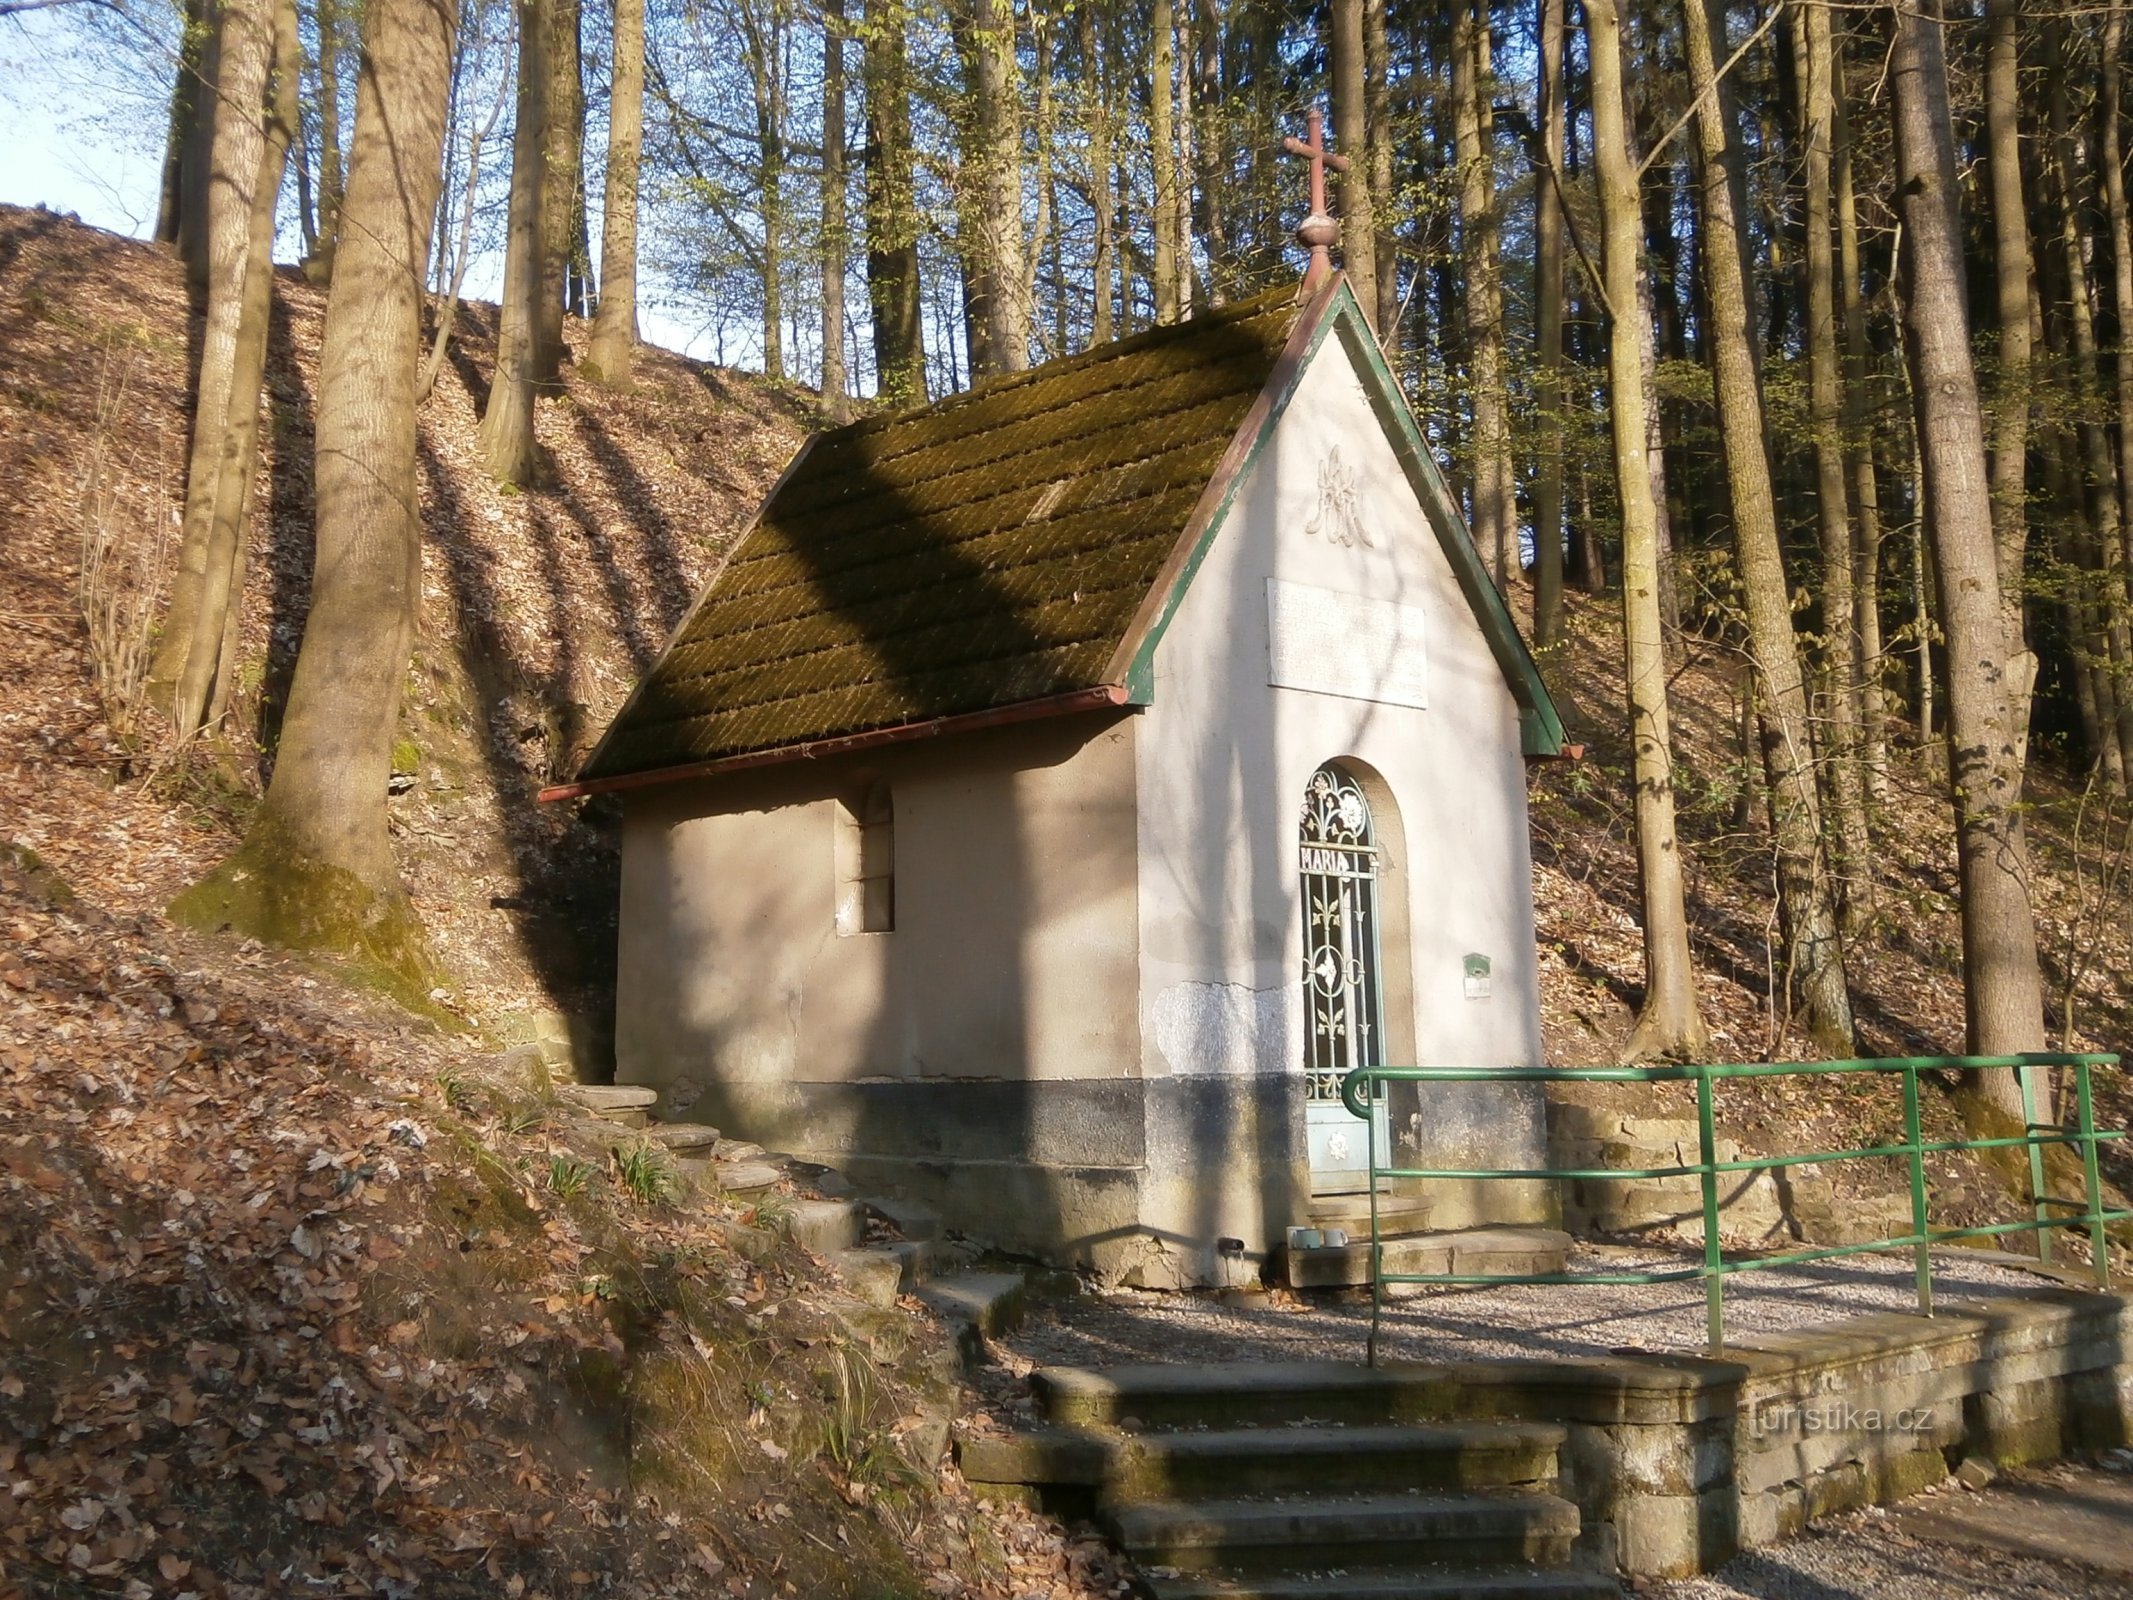 Kaple Panny Marie na Boušíně (Slatina nad Úpou)